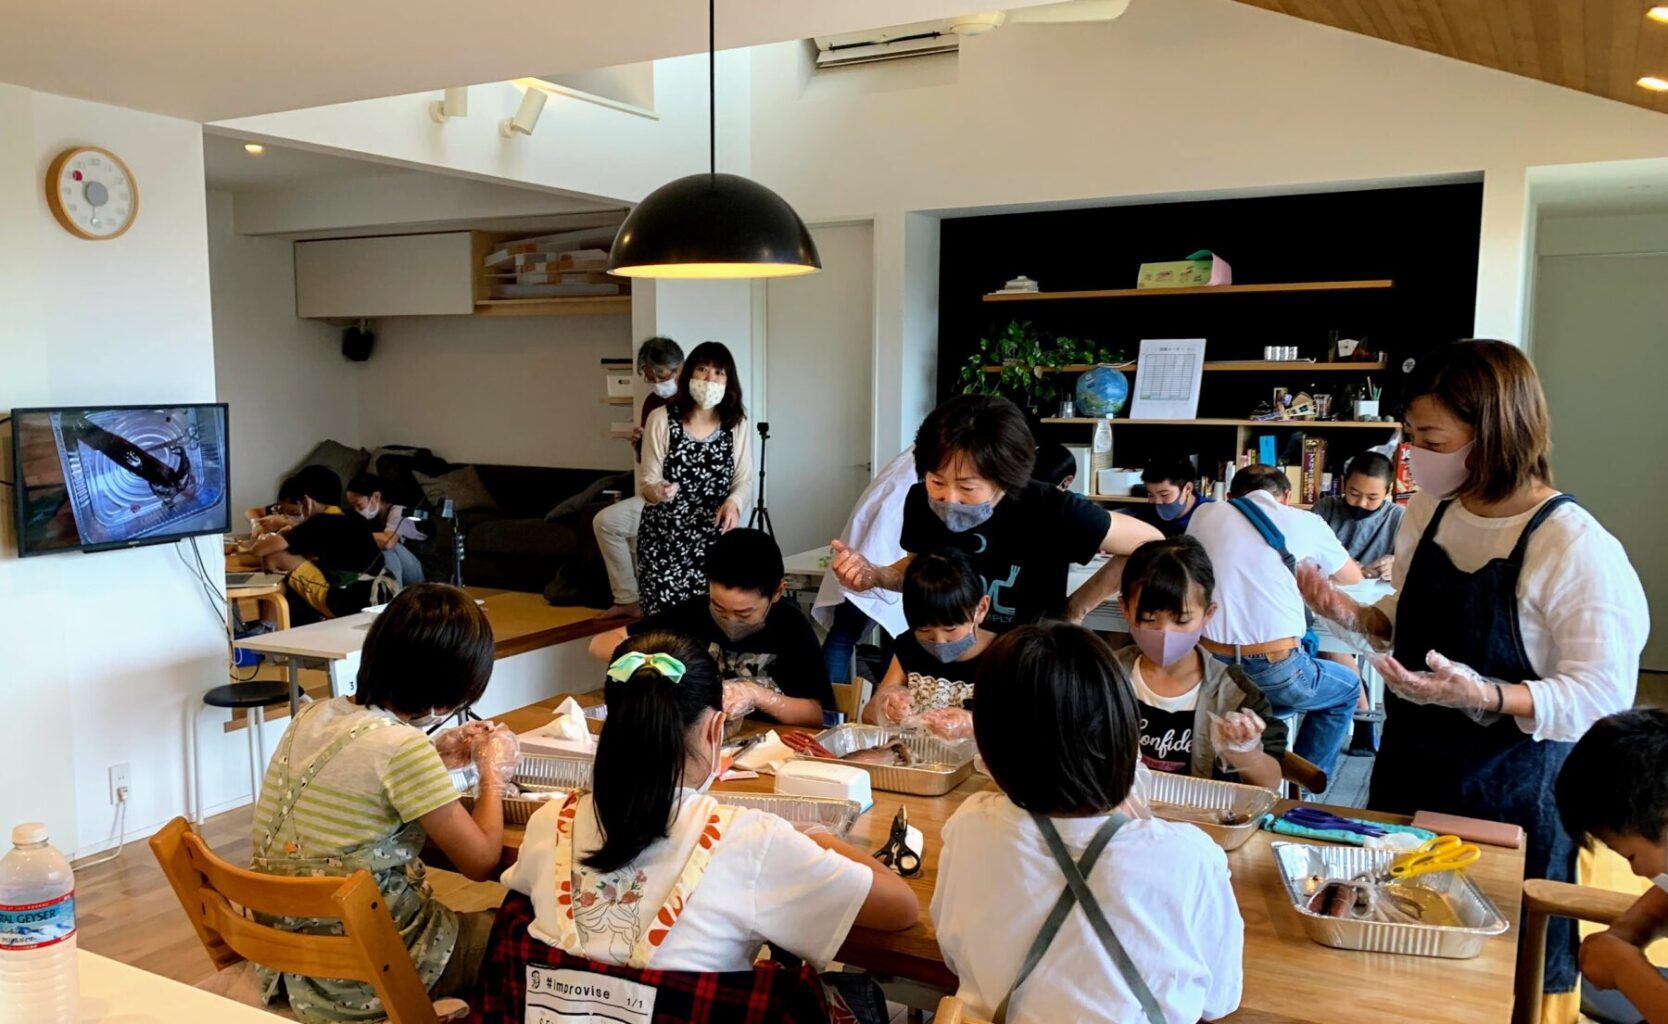 館山市の学習塾ランゲージ・ラボラトリーのイカの解剖実験の様子。